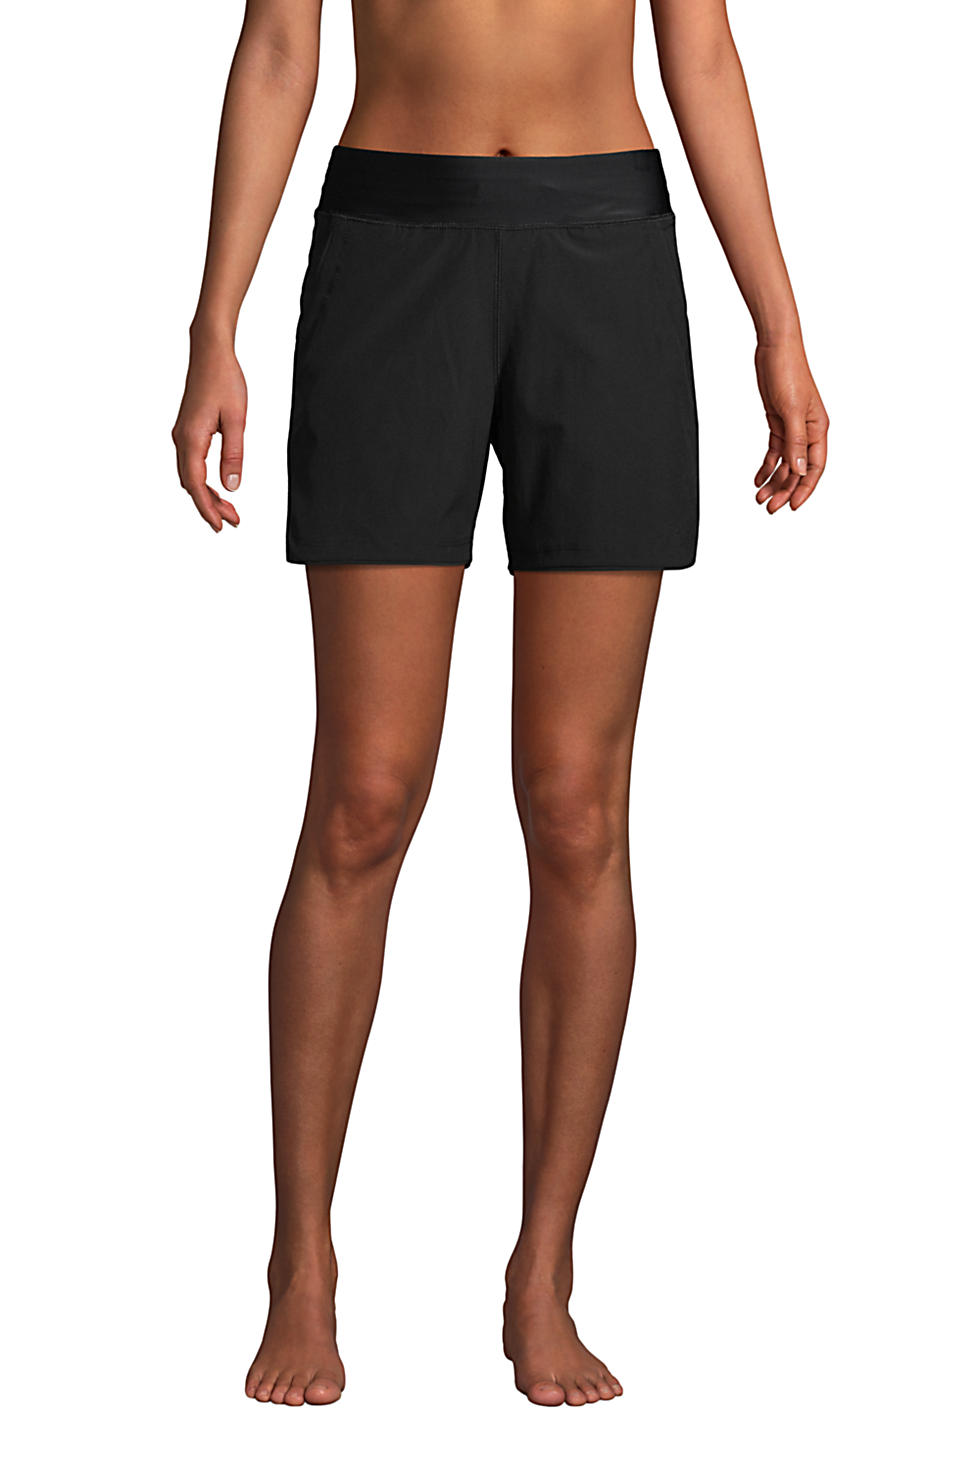 Keaac Womens Shorts Stetchy High Waist Shorts Walking Shorts 